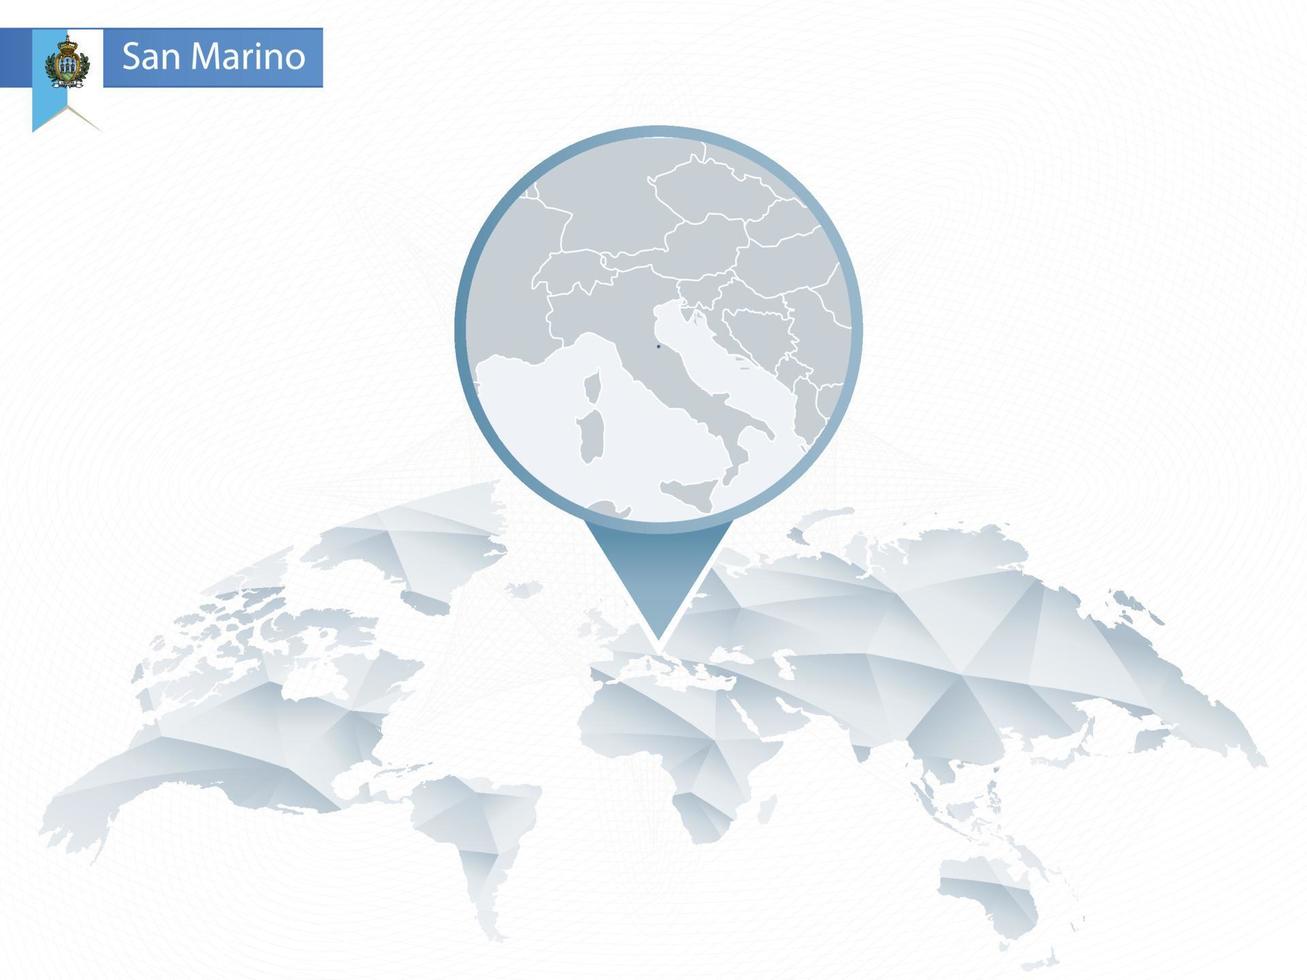 mappa del mondo arrotondata astratta con mappa dettagliata di san marino appuntata. vettore